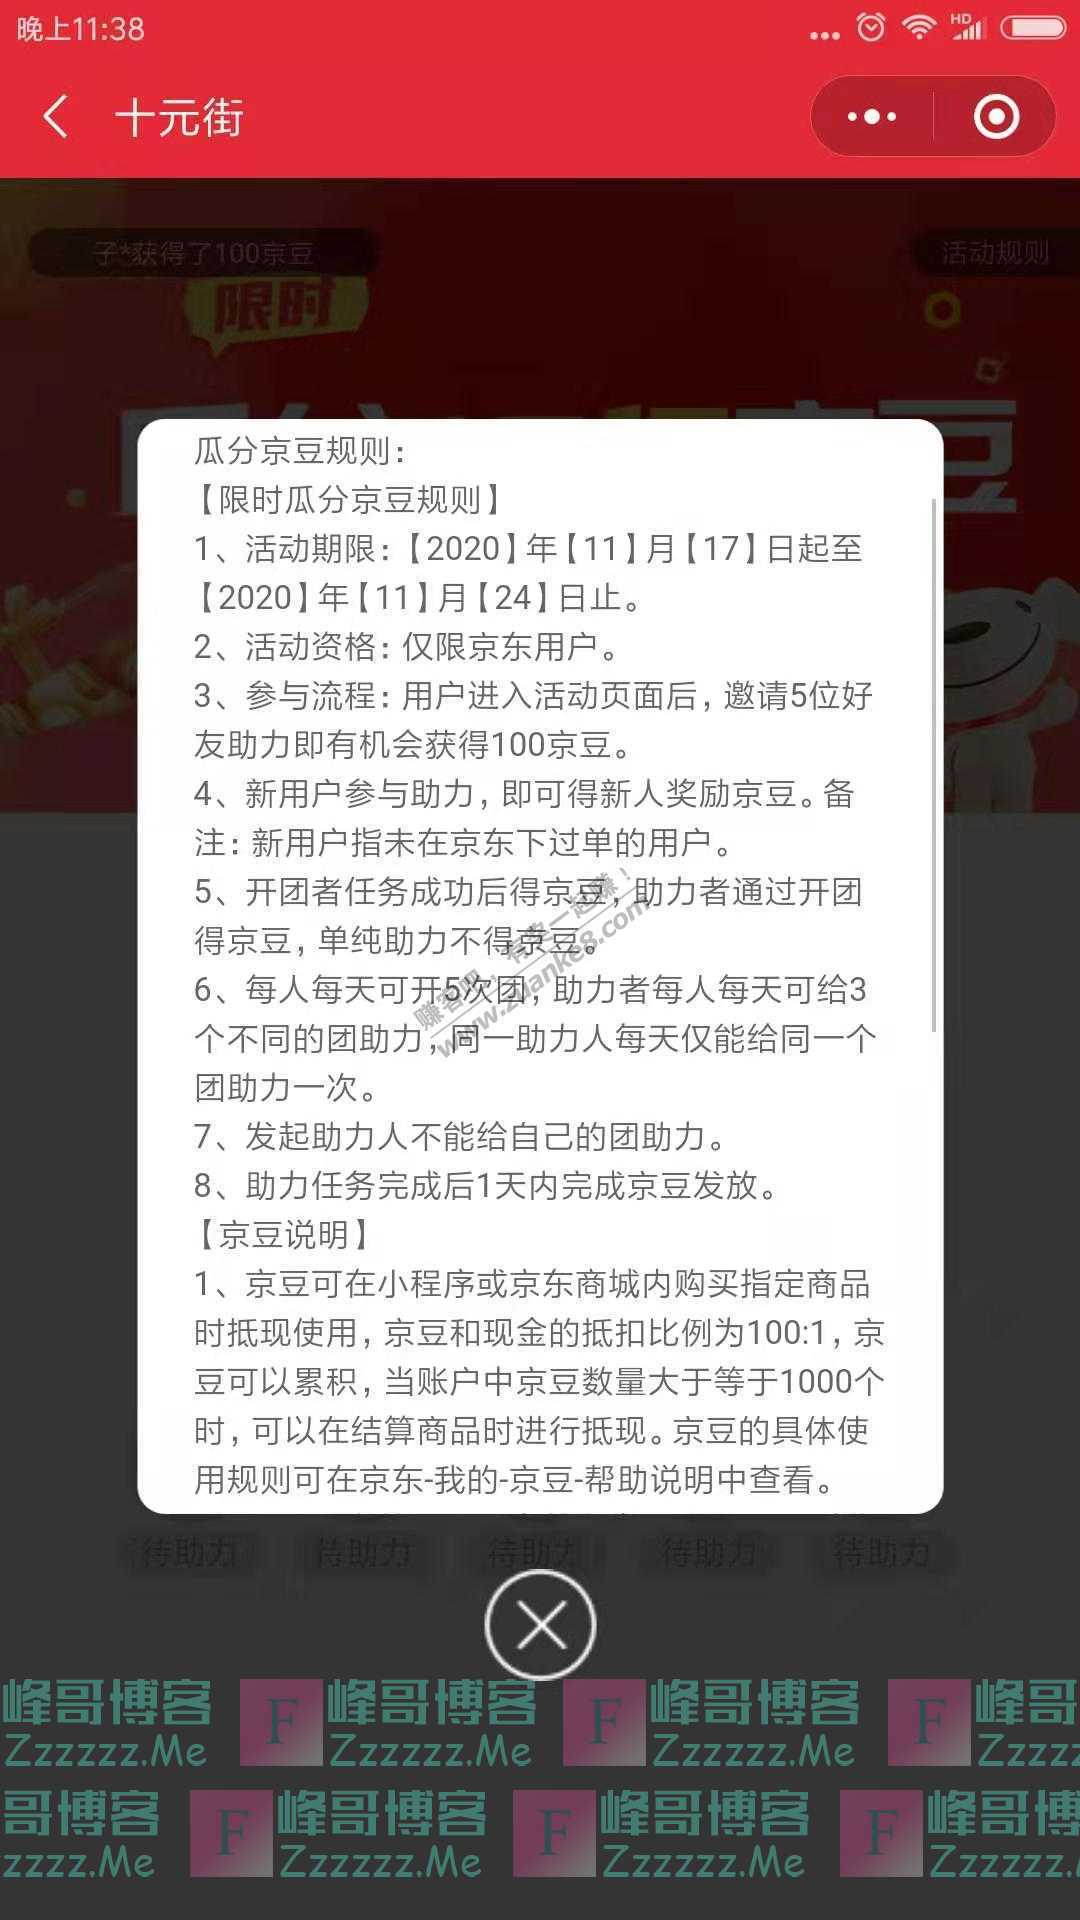 十元街1亿京豆 限时瓜分（截止11月24日）